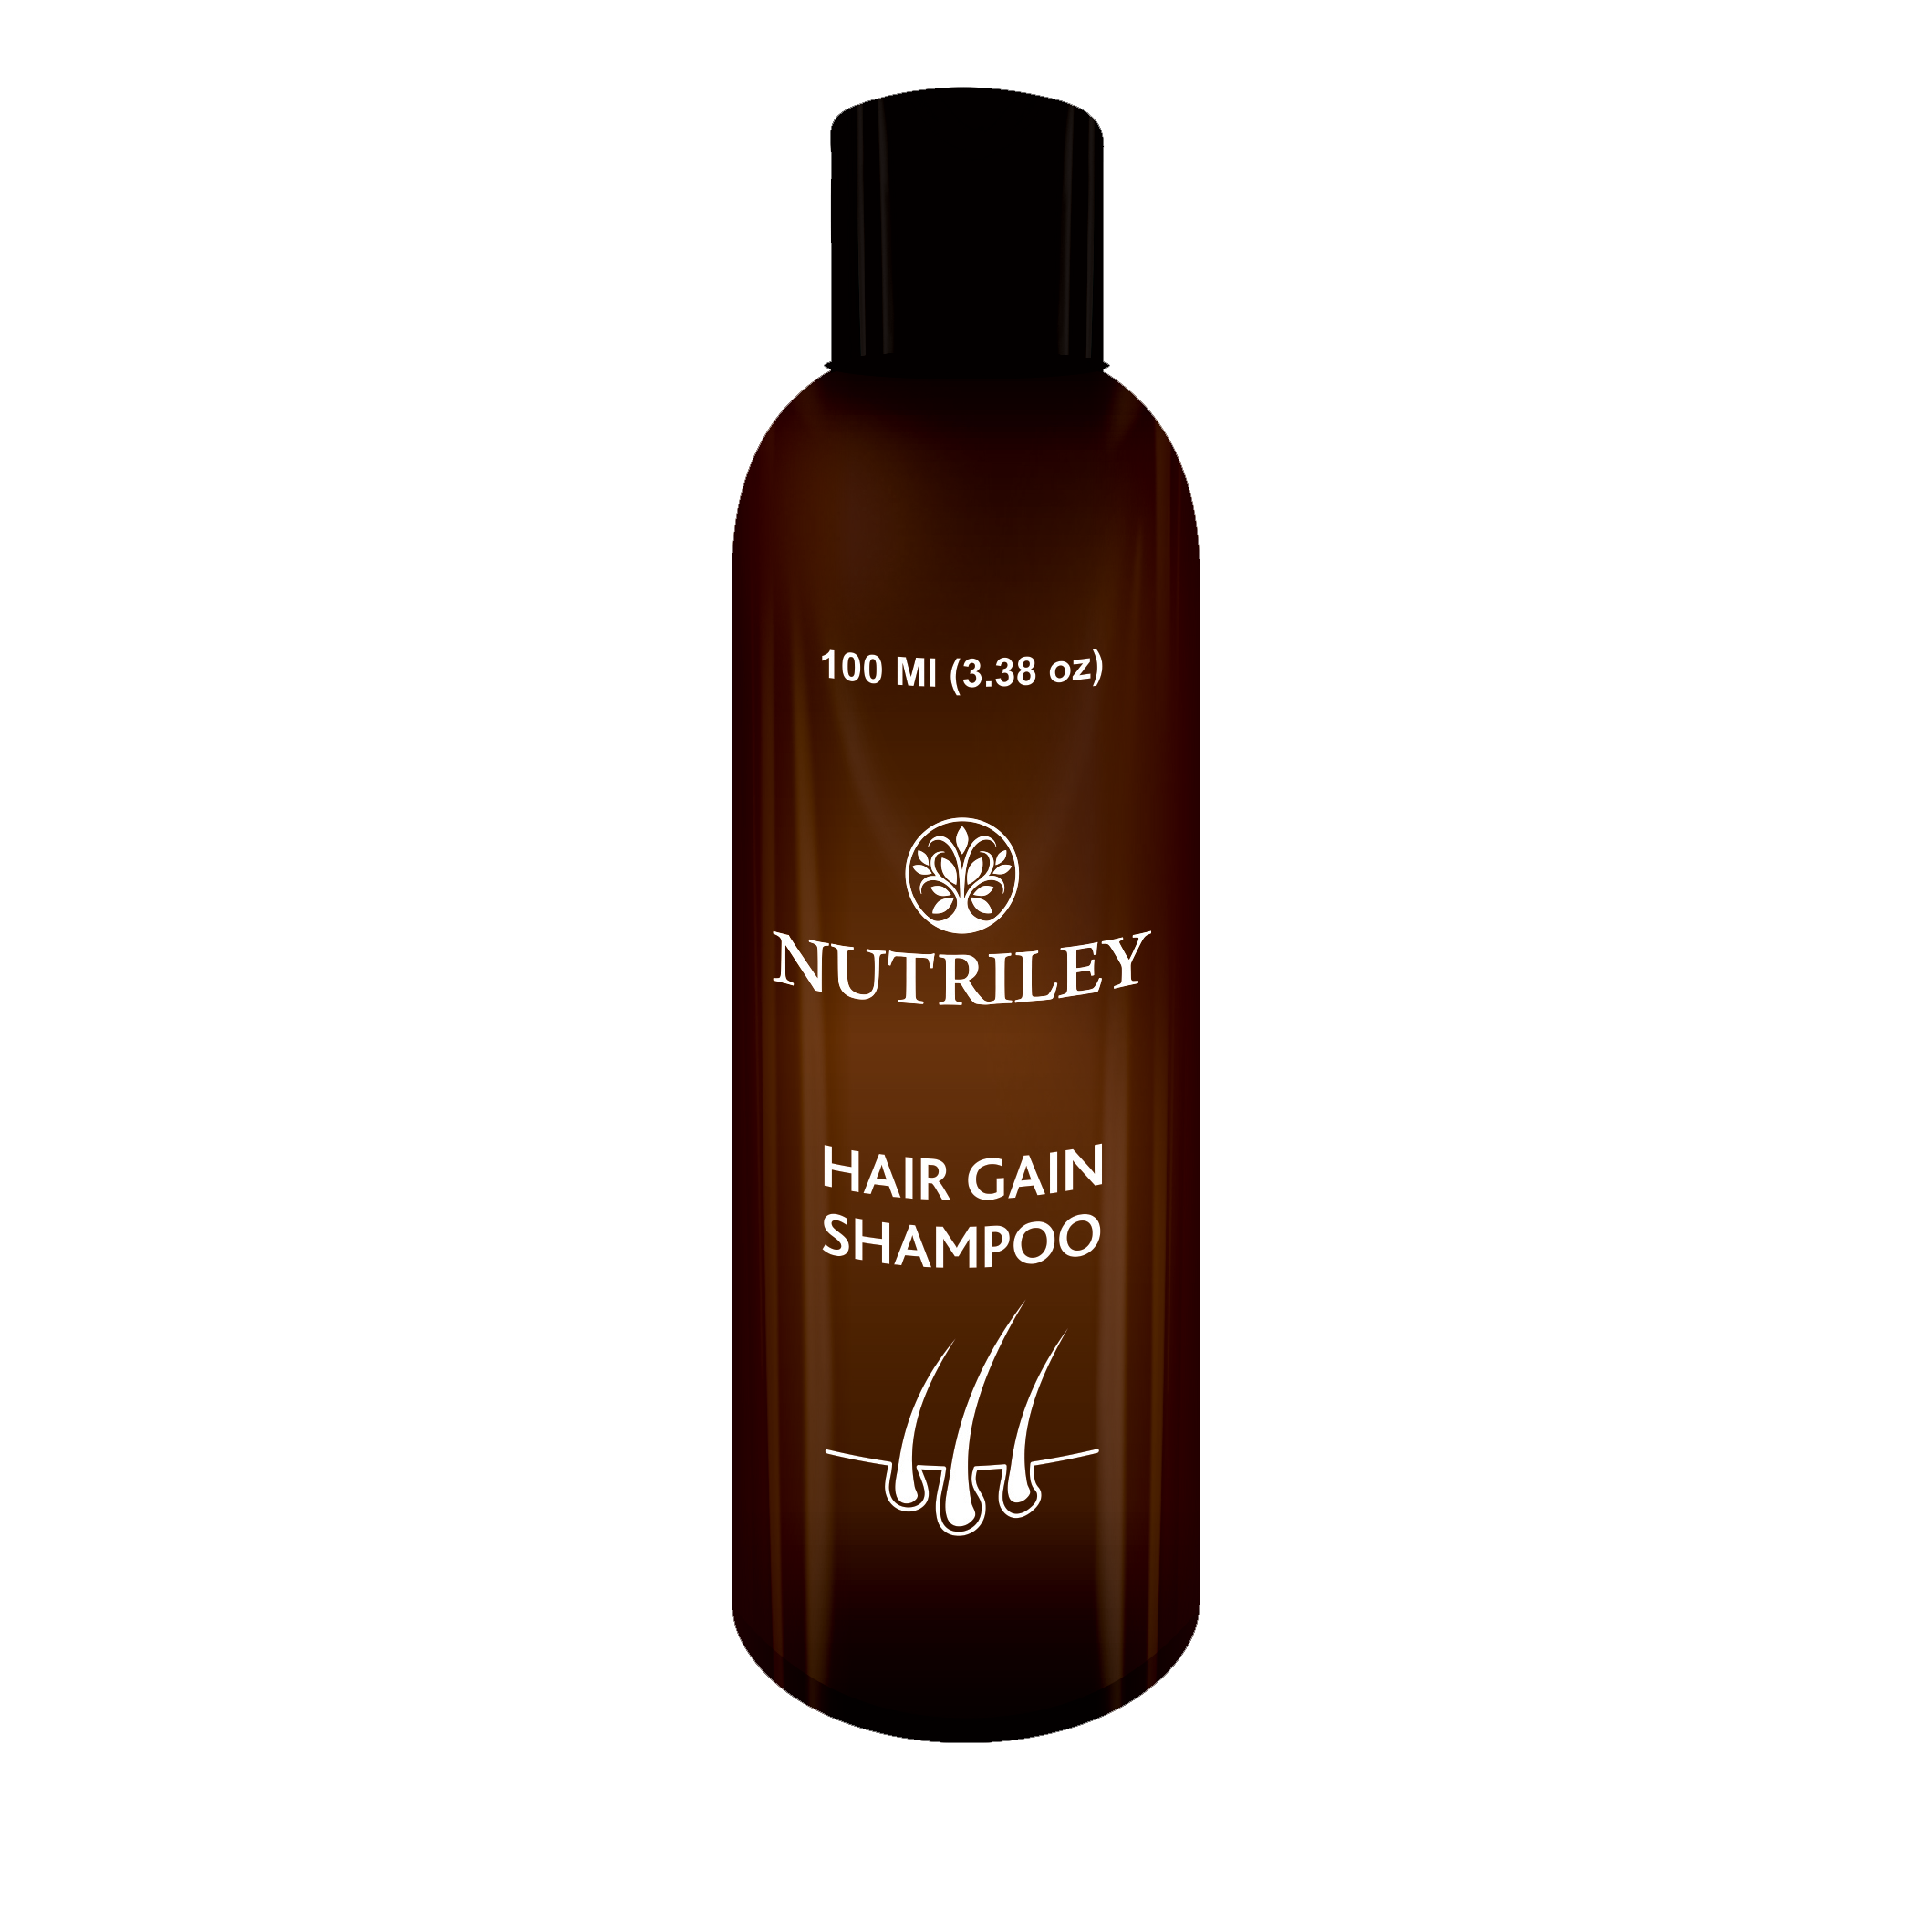 Hair Gain Shampoo – Nutriley Healthcare